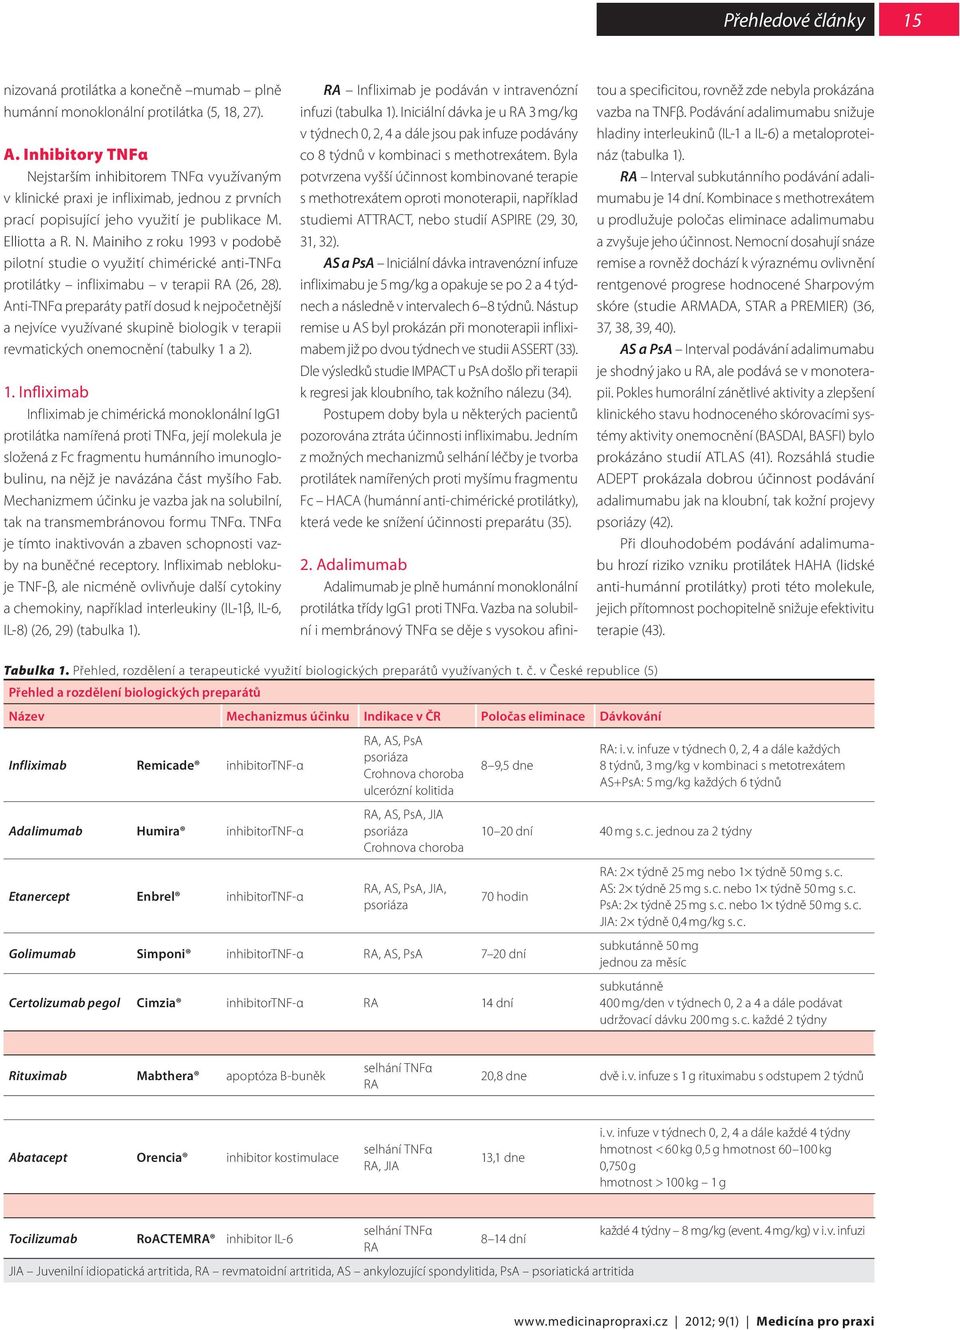 Anti-TNFα preparáty patří dosud k nejpočetnější a nejvíce využívané skupině biologik v terapii revmatických onemocnění (tabulky 1 